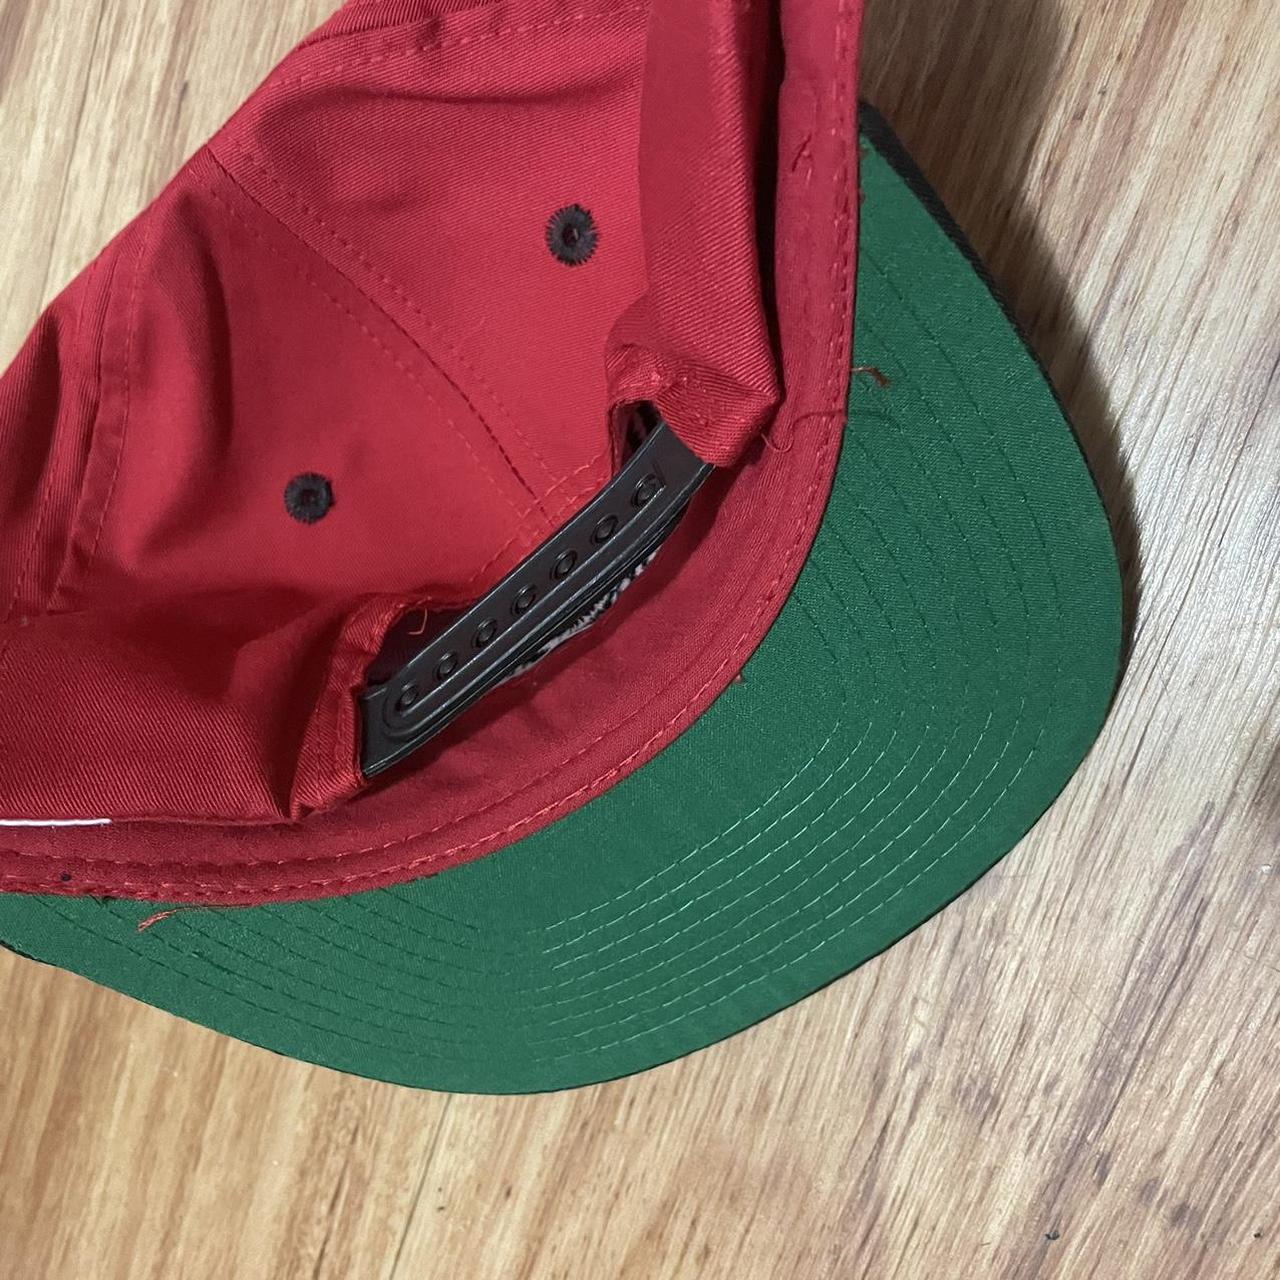 Vintage Atlanta Hawks SnapBack Hat. The hat is brand - Depop